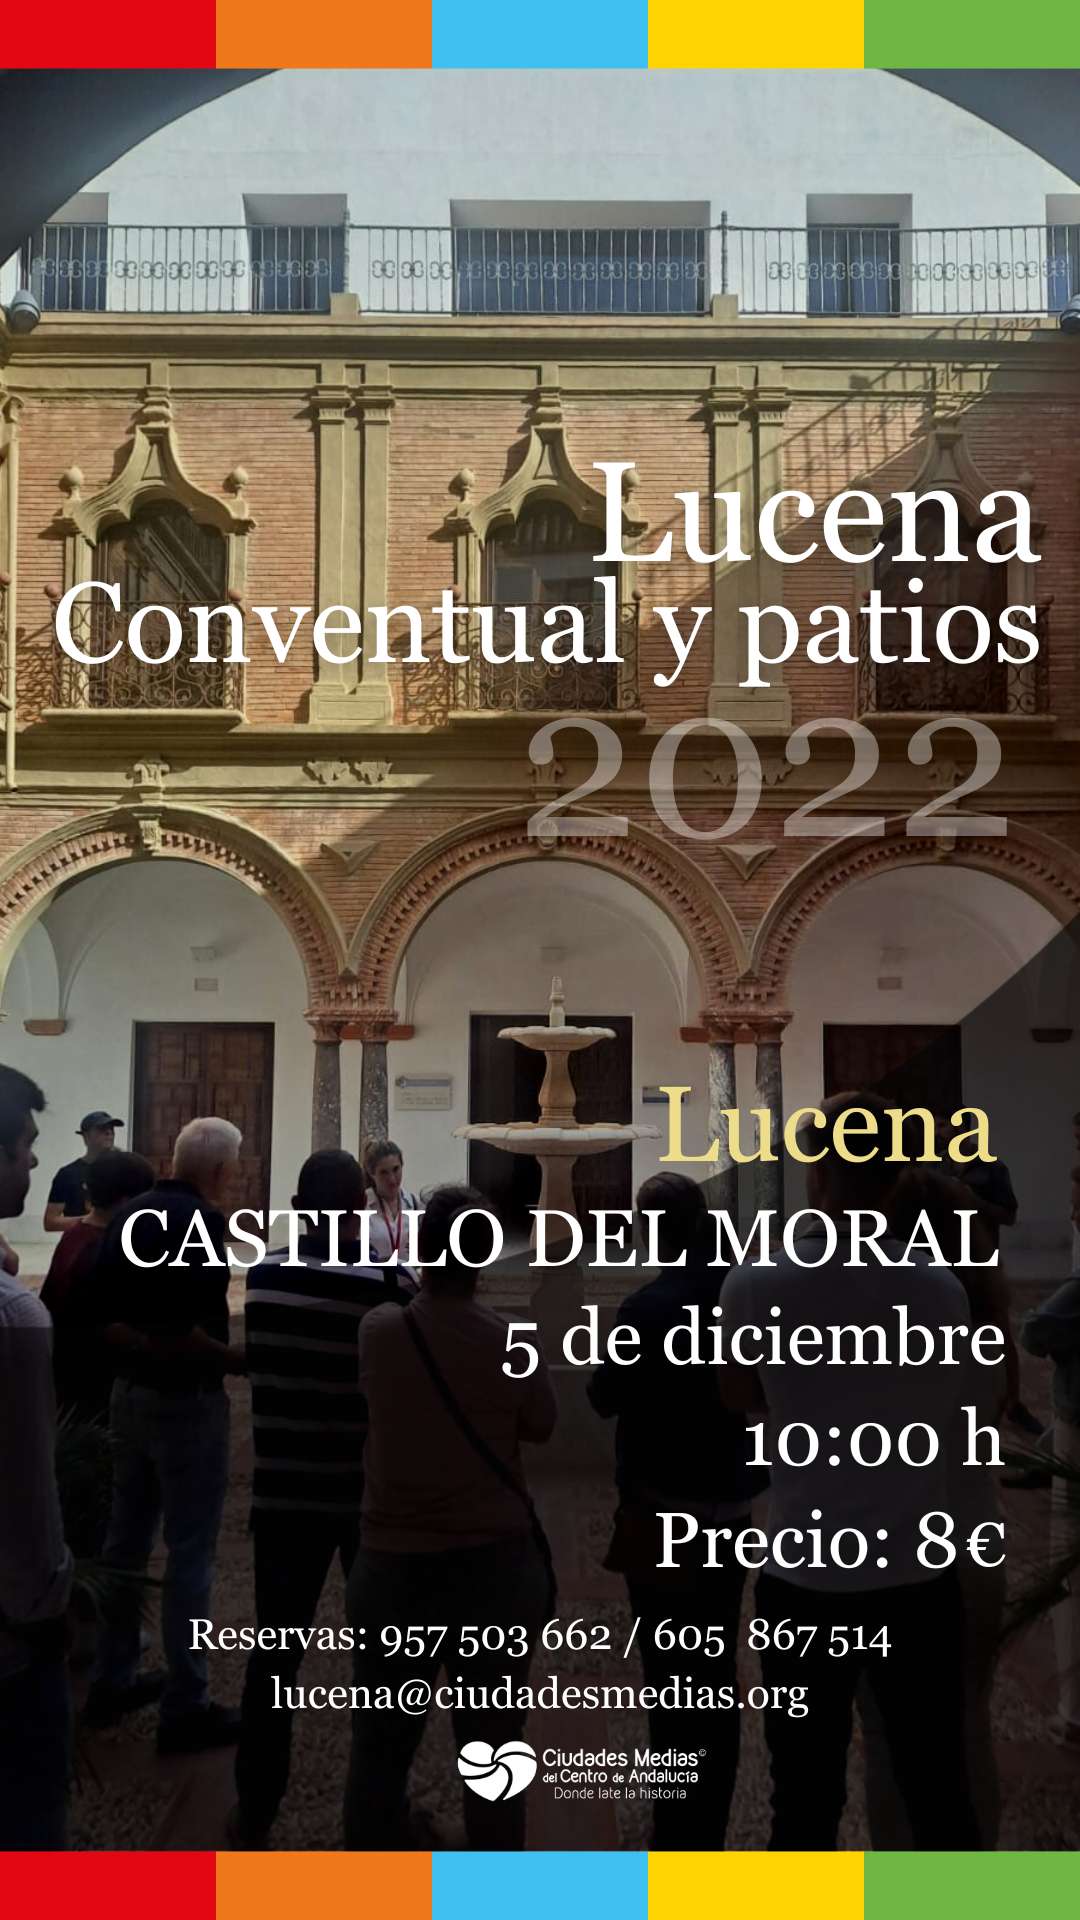 Lucena Monumental, Conventual y sus patios